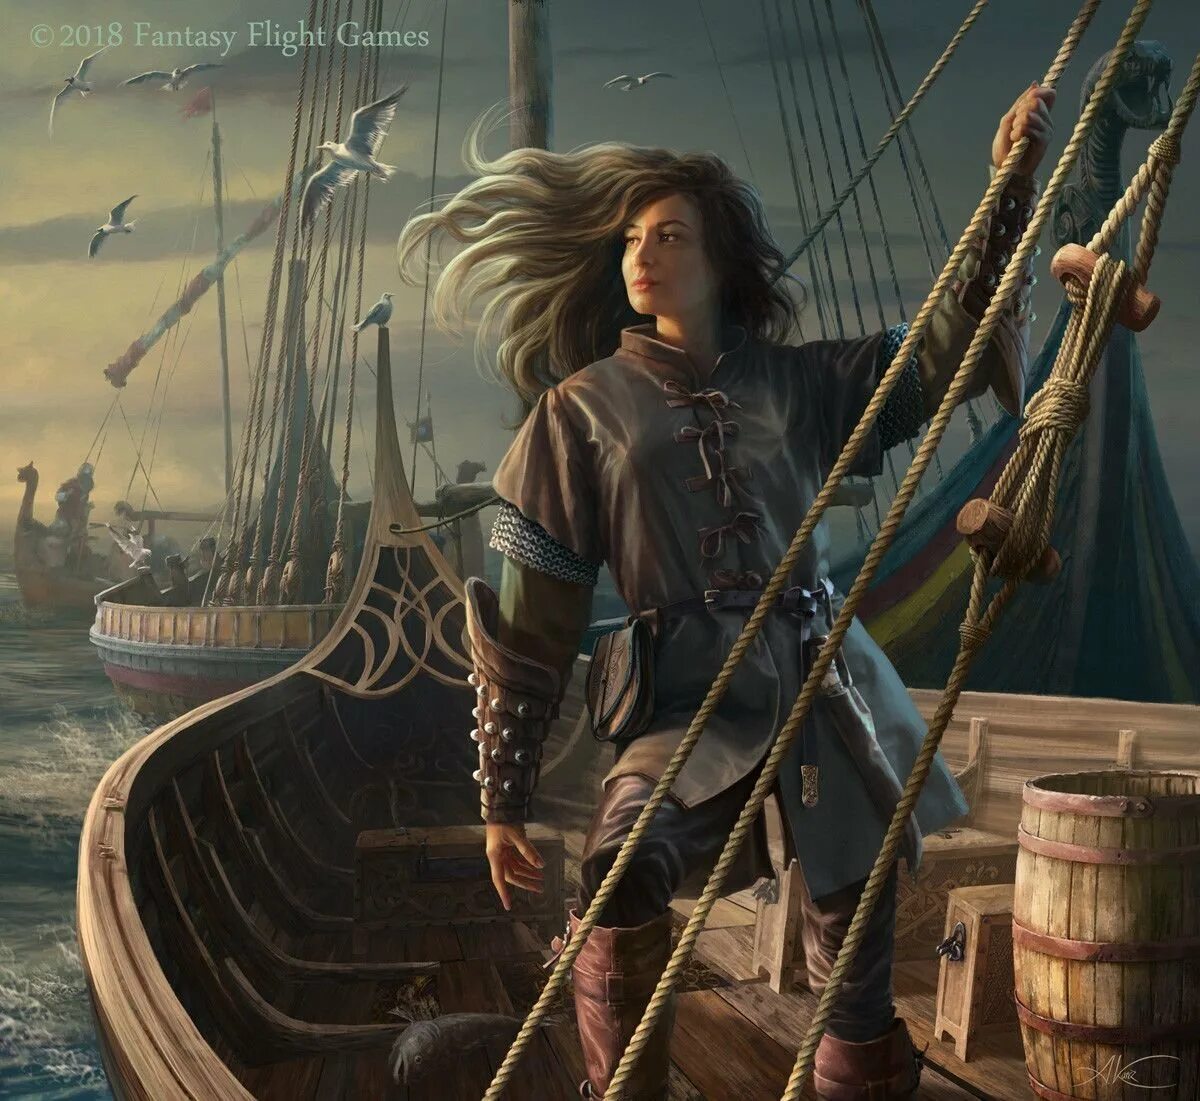 Женщина юнга. Элизабет Капитан корабля пираты 18. Альвильда Королева пиратов. Флибустьеры пираты Корсары. Альвильда Королева пиратов арт.